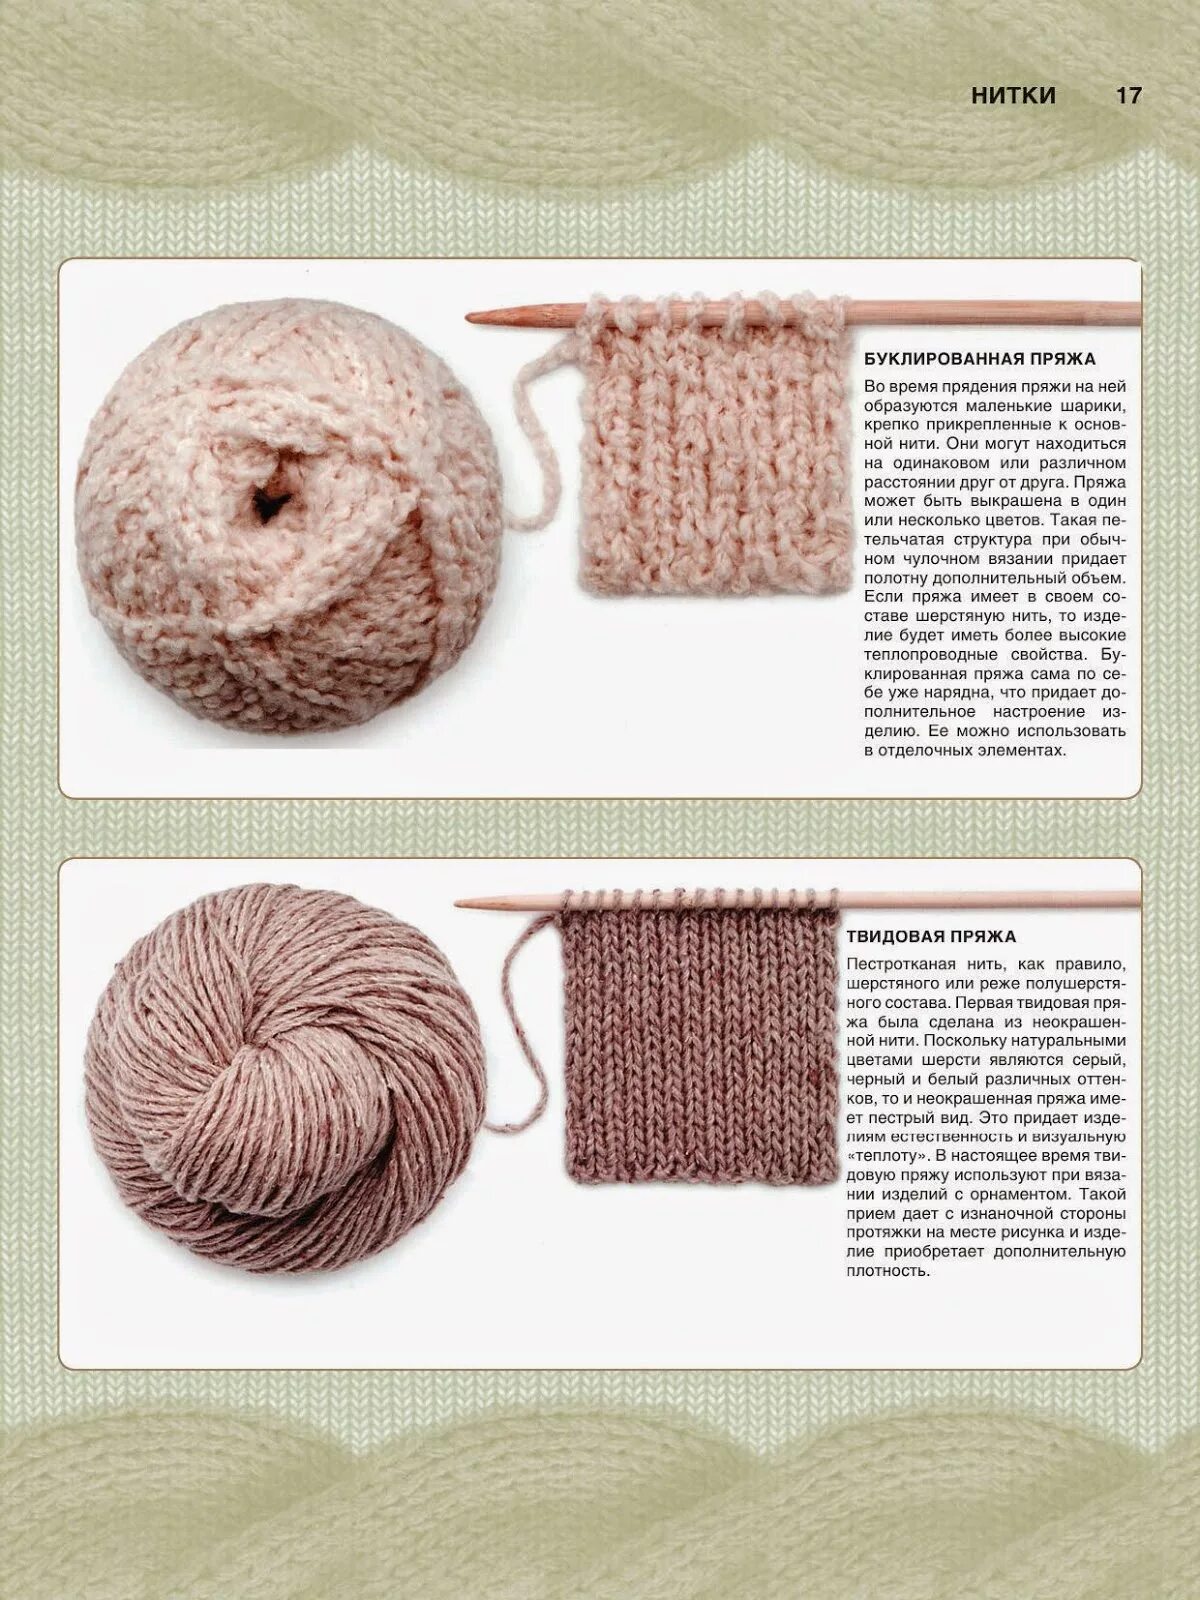 Типы ниток. Разновидность ниток для вязания. Разновидности пряжи для вязания. Название ниток для вязания. Название пряжи для вязания спицами.